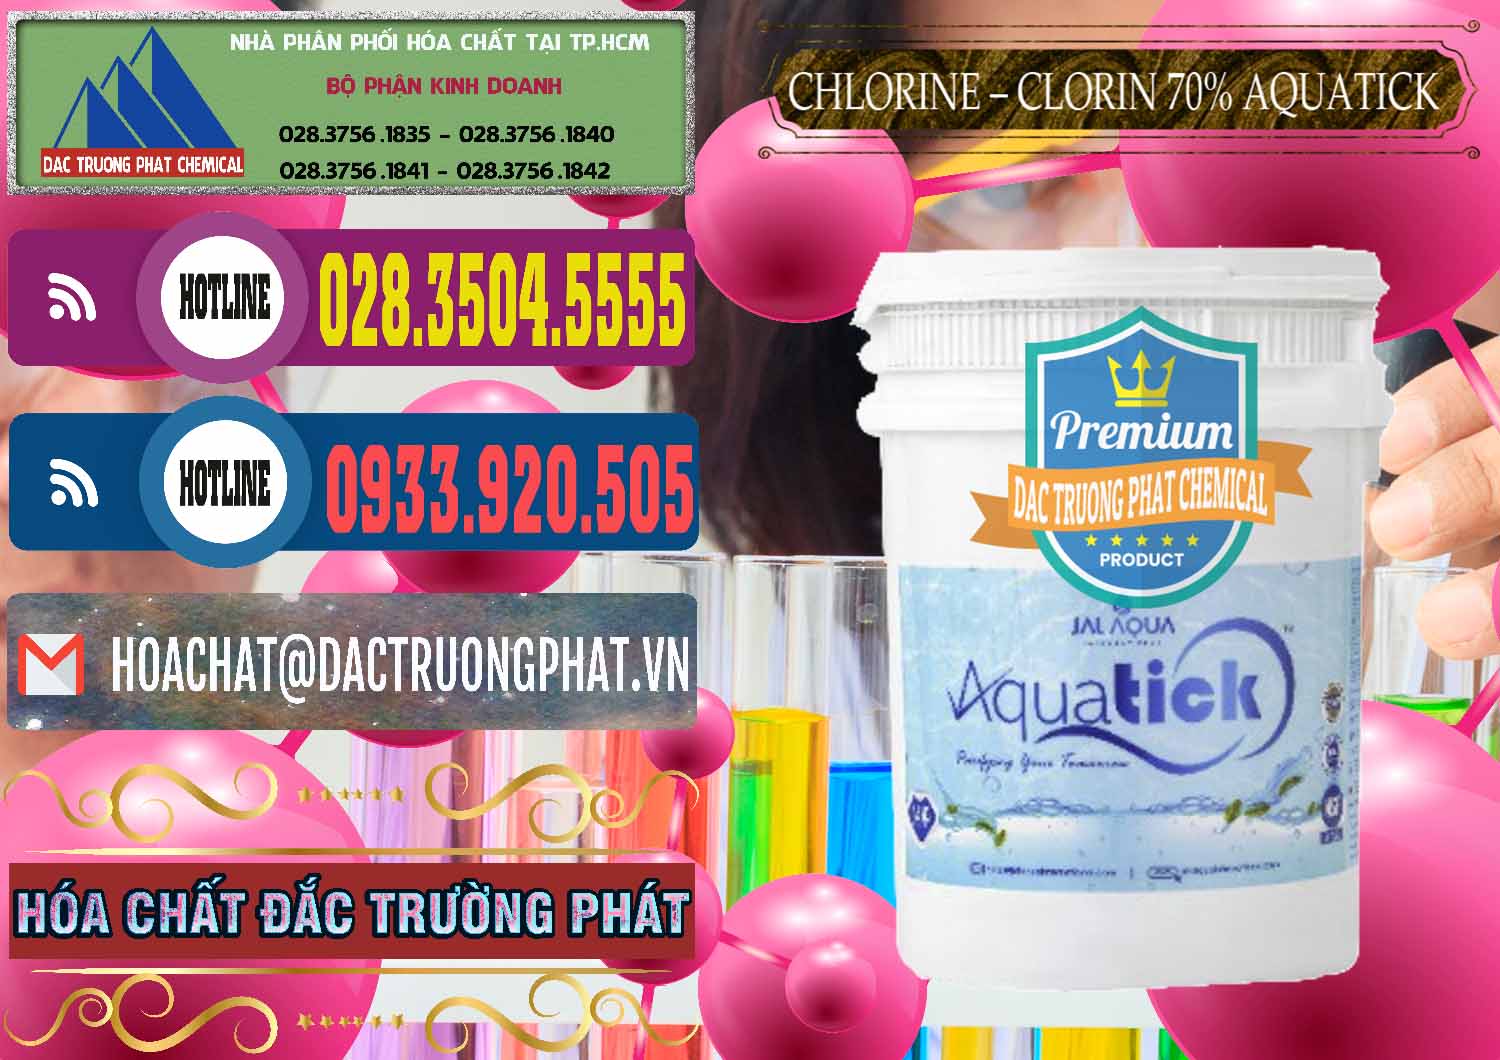 Công ty bán - phân phối Chlorine – Clorin 70% Aquatick Thùng Cao Jal Aqua Ấn Độ India - 0237 - Cty phân phối & kinh doanh hóa chất tại TP.HCM - muabanhoachat.com.vn